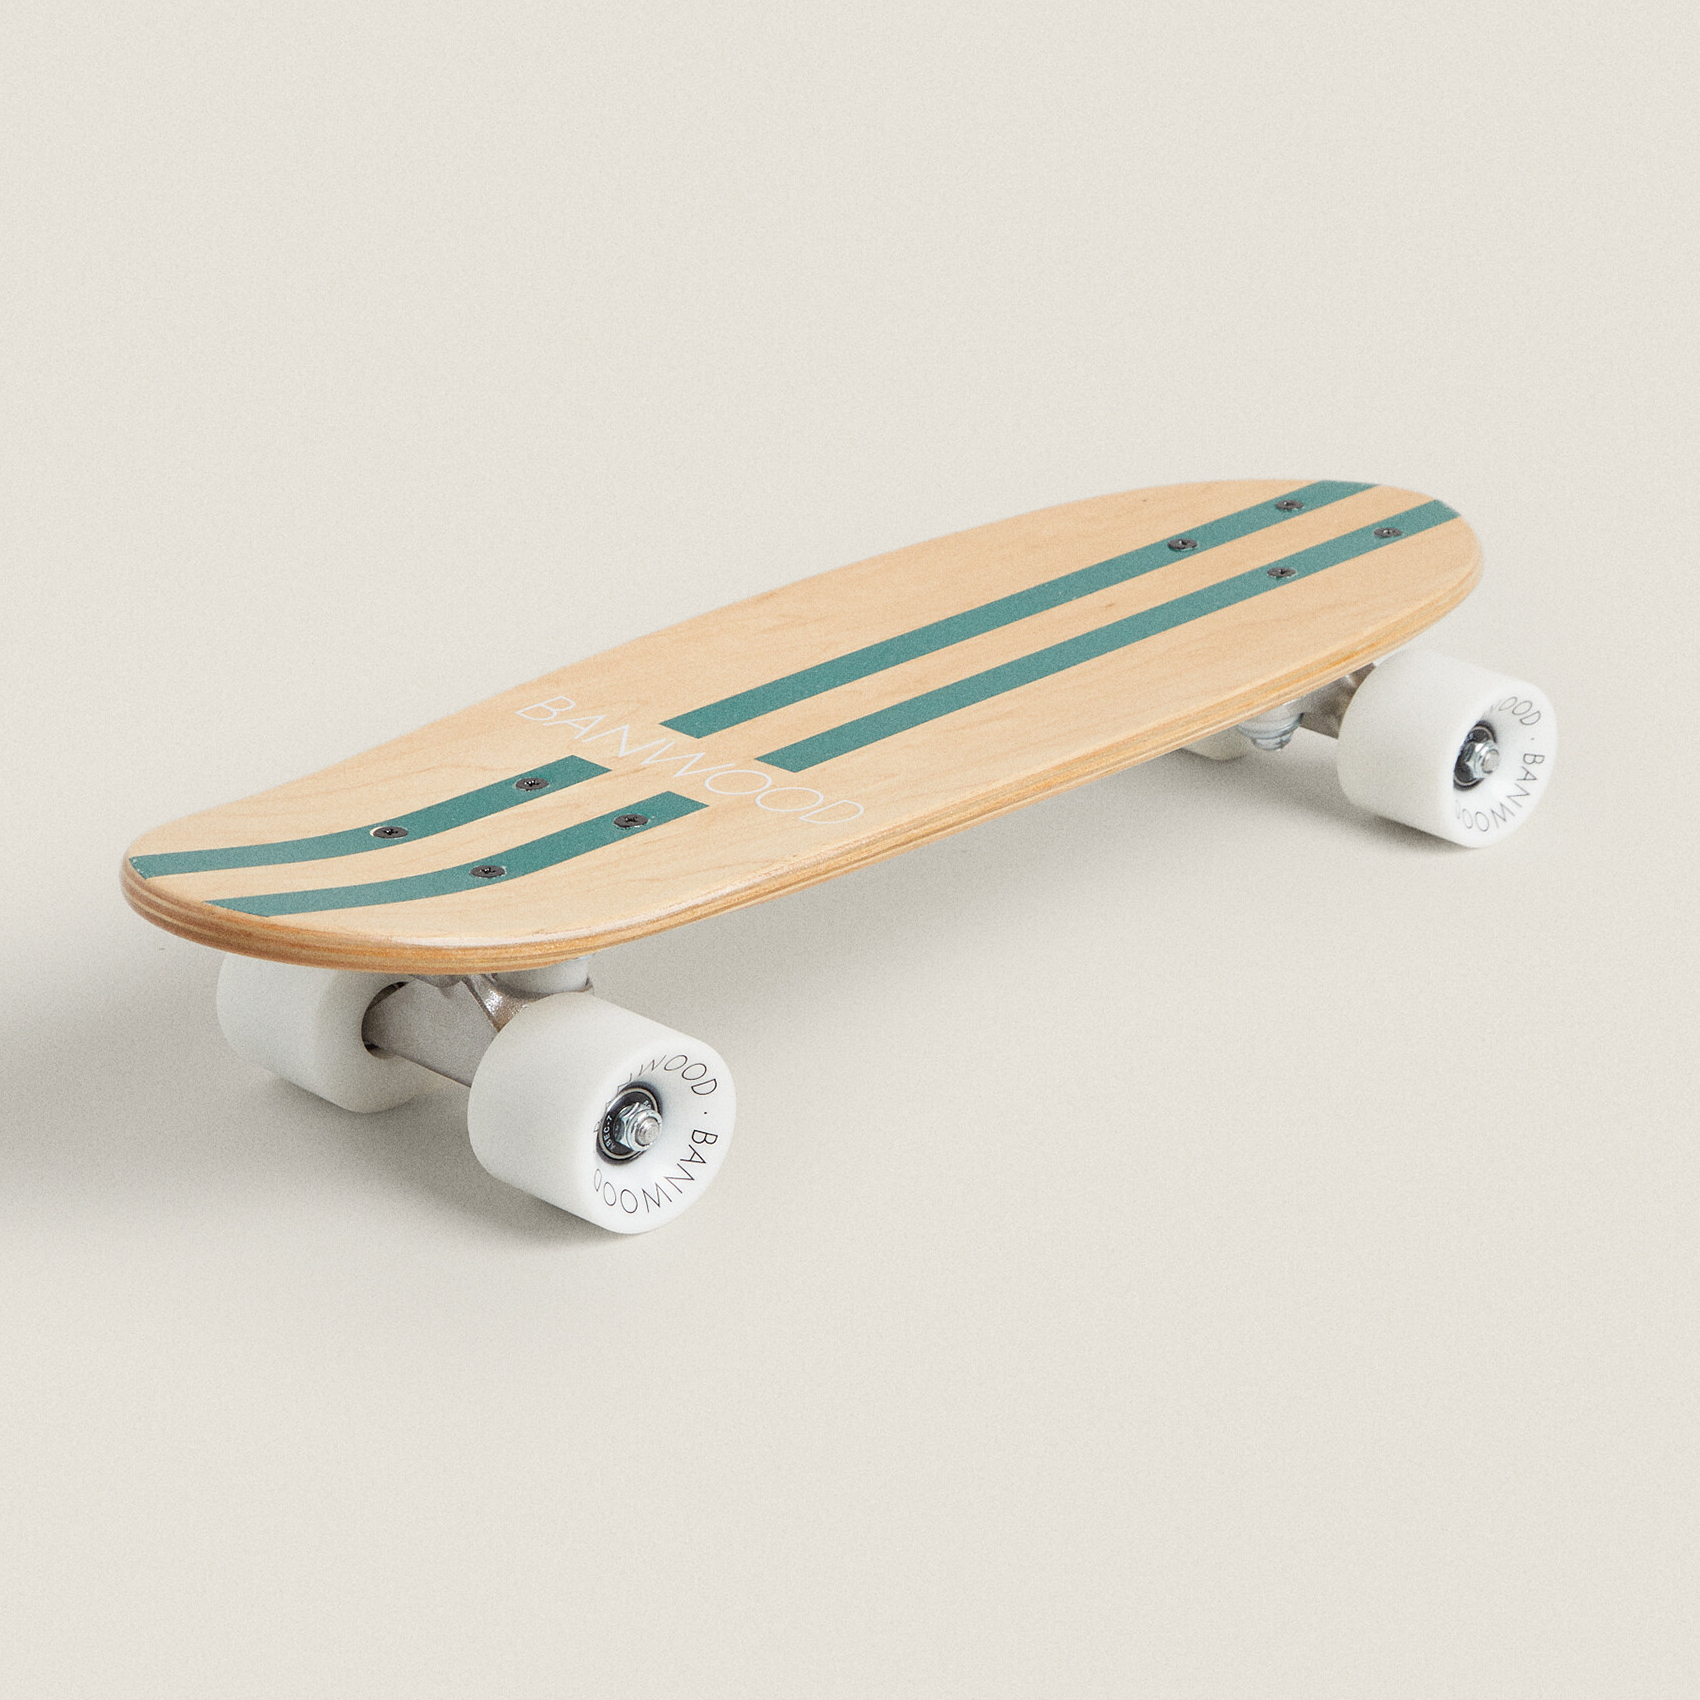 цена Детский скейборд Zara Home Banwood, бежевый/зеленый